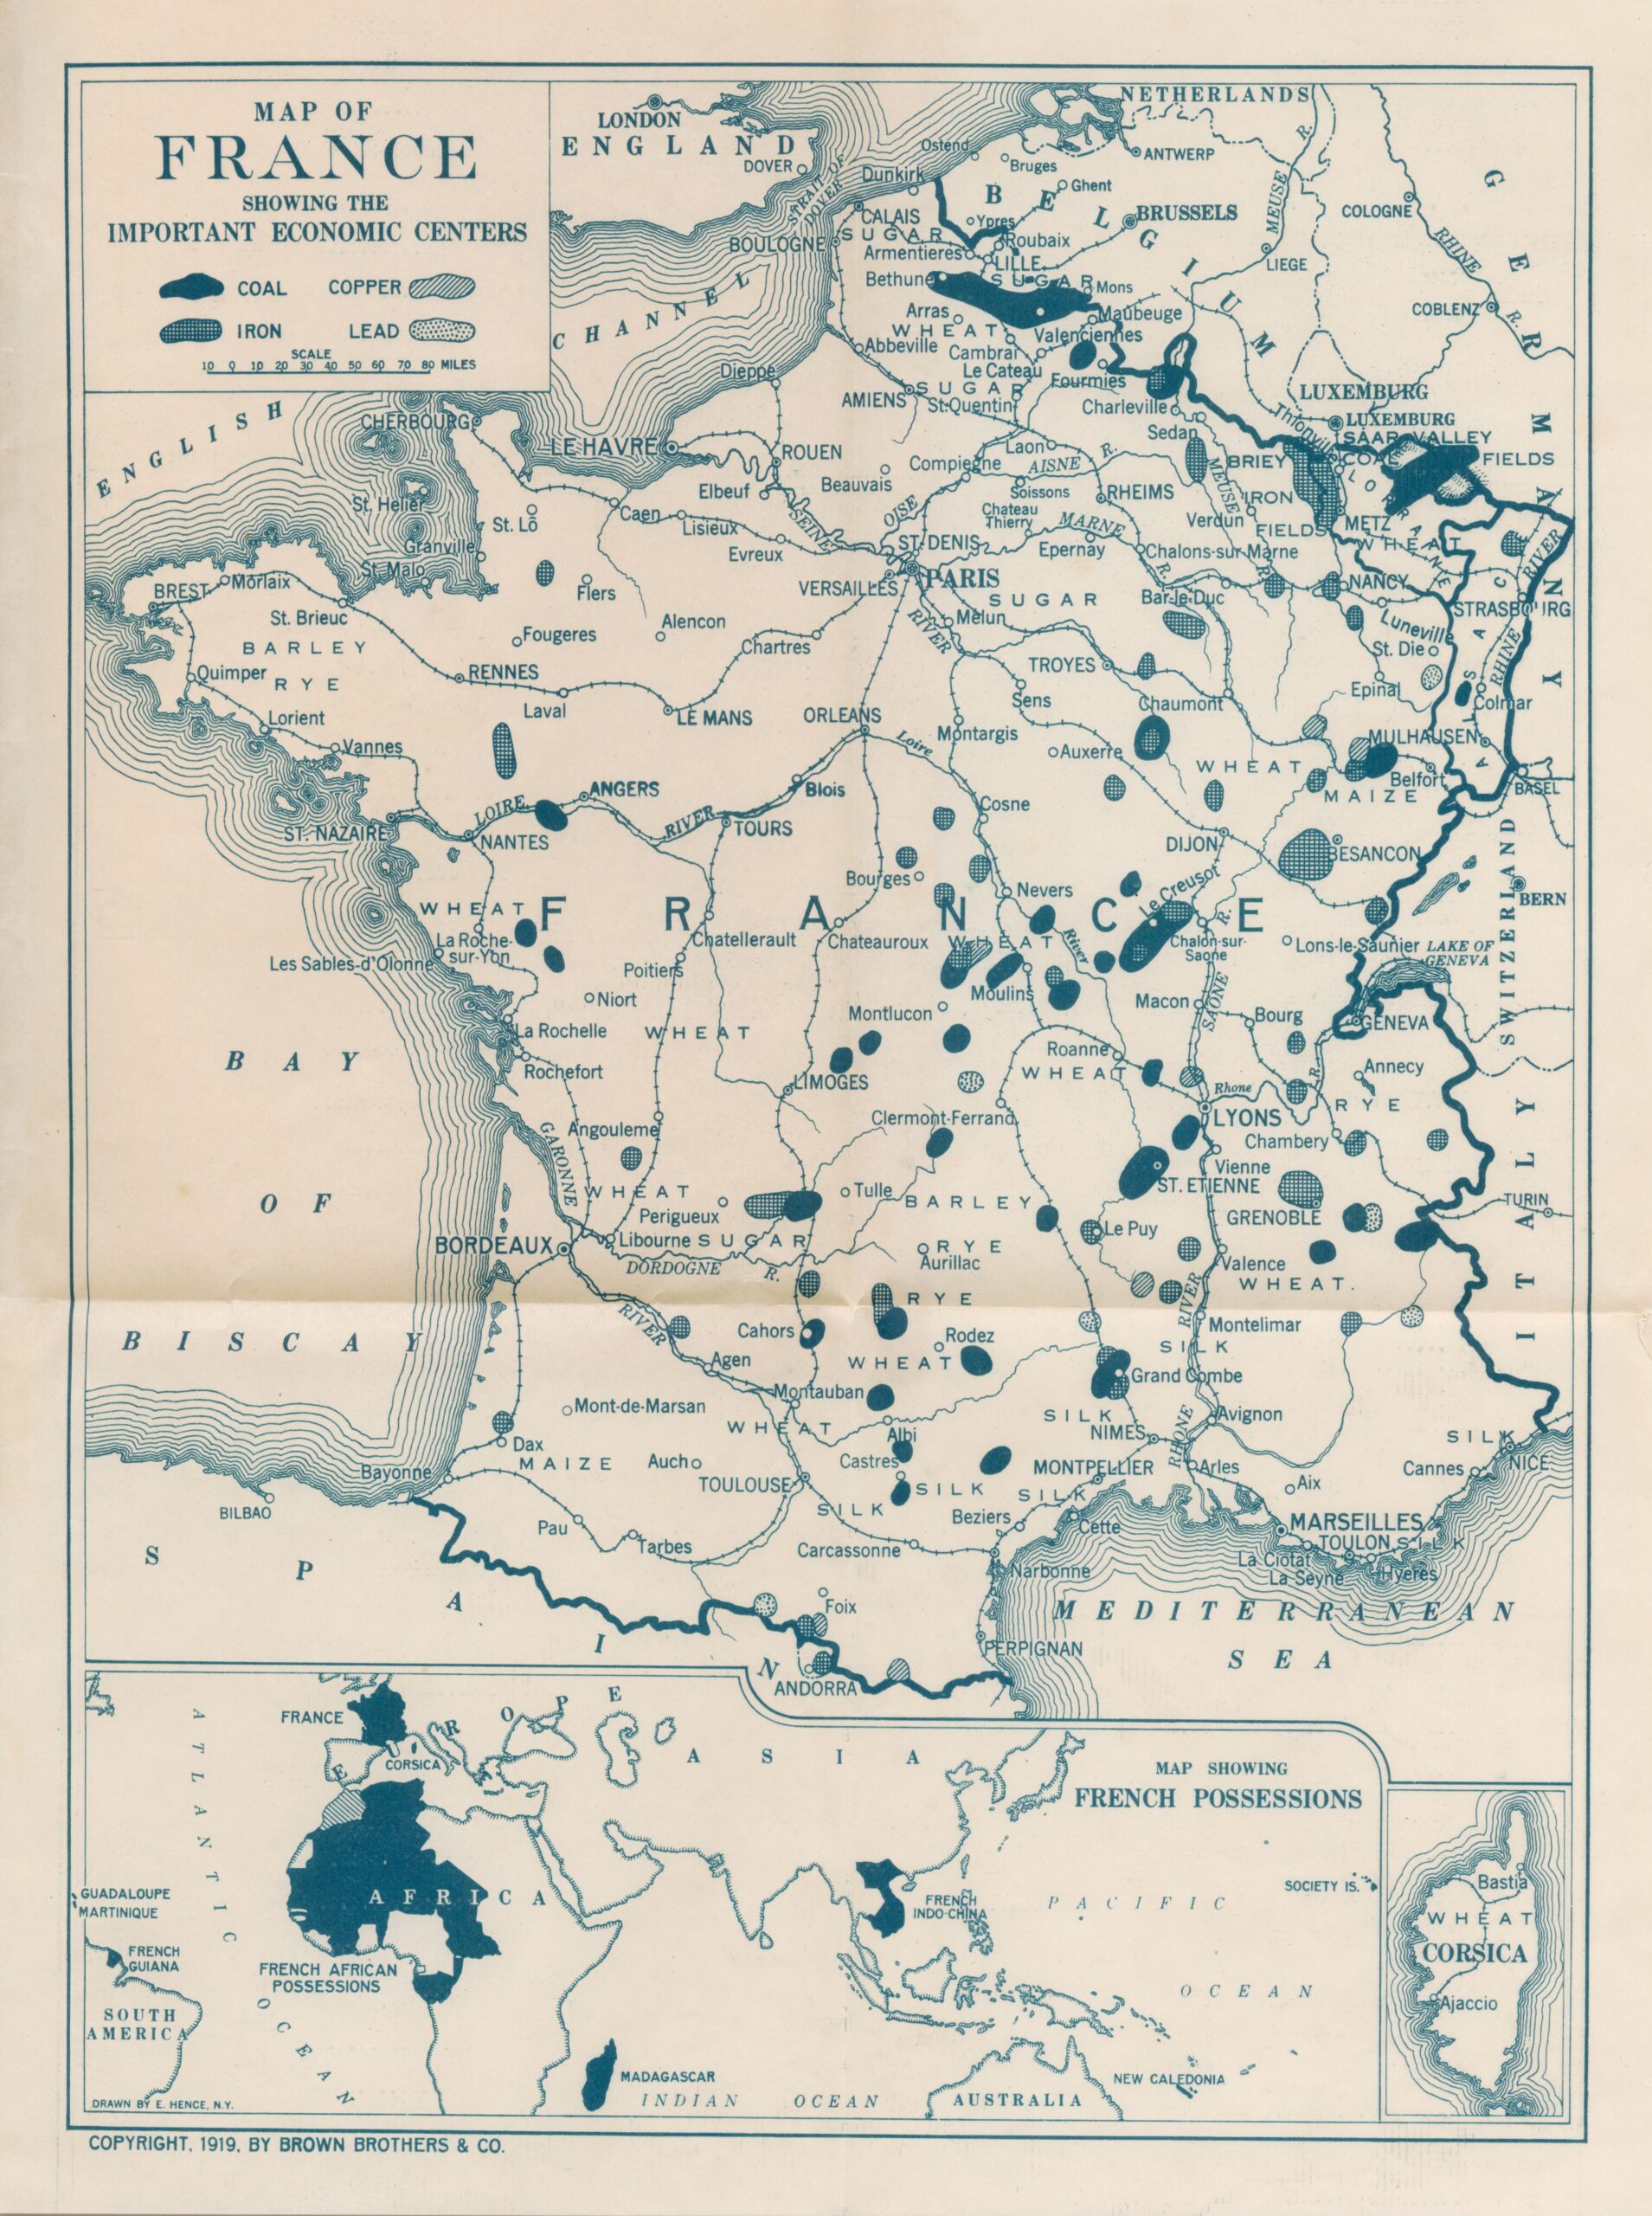 Los grandes centros económicos de Francia (1919)